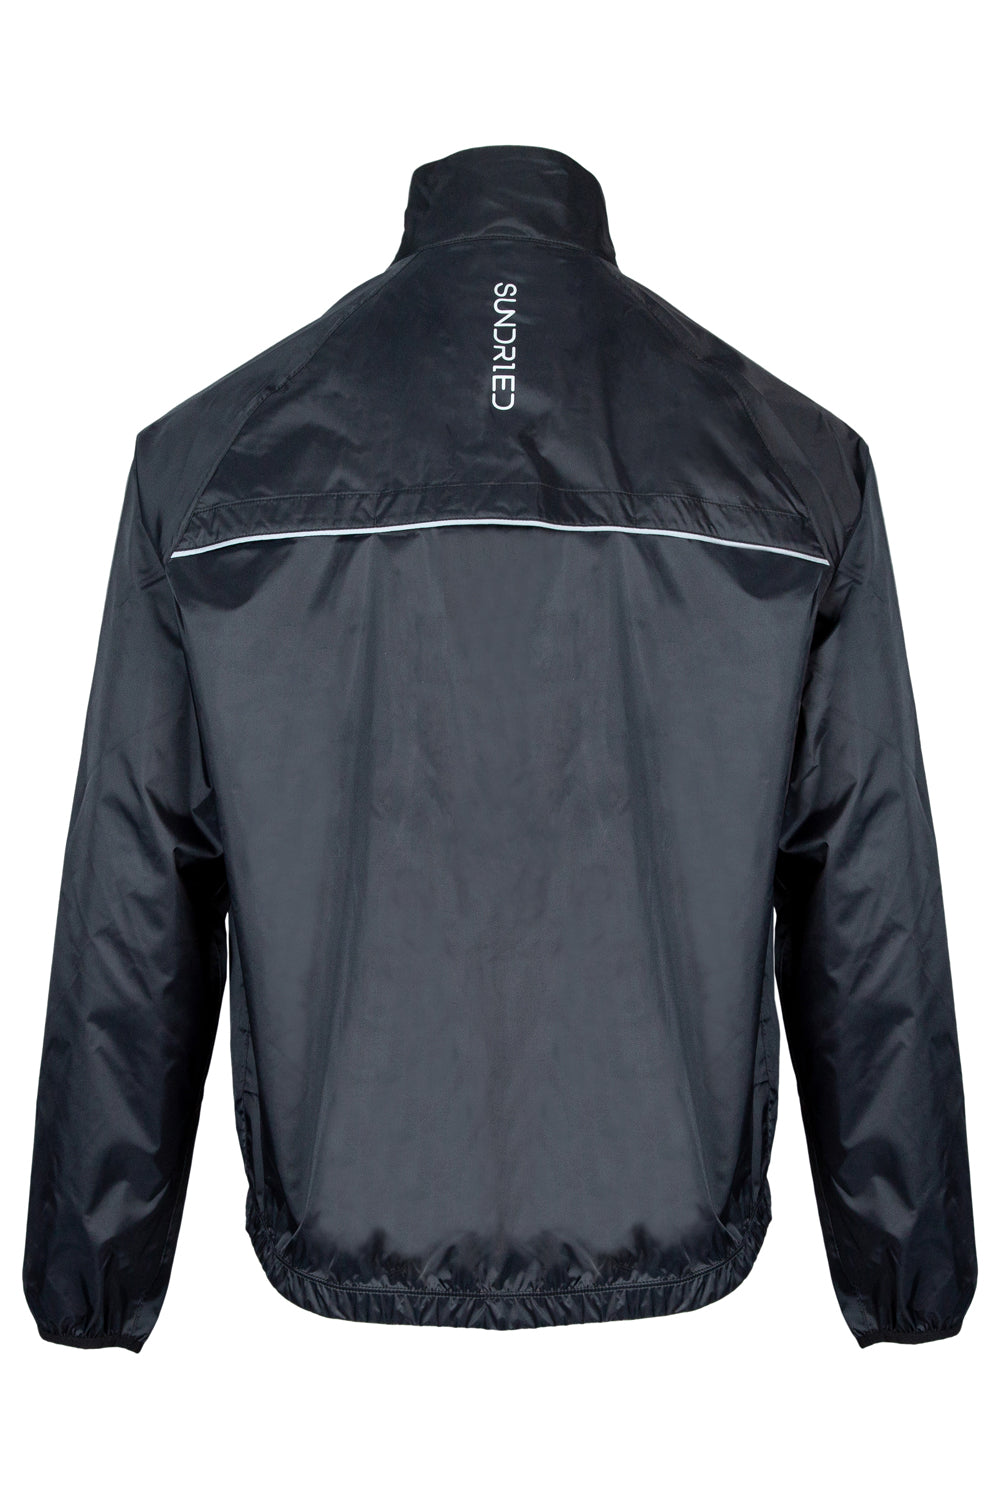 Sundried Men's Grande Casse V3 Jacket Jackets Activewear